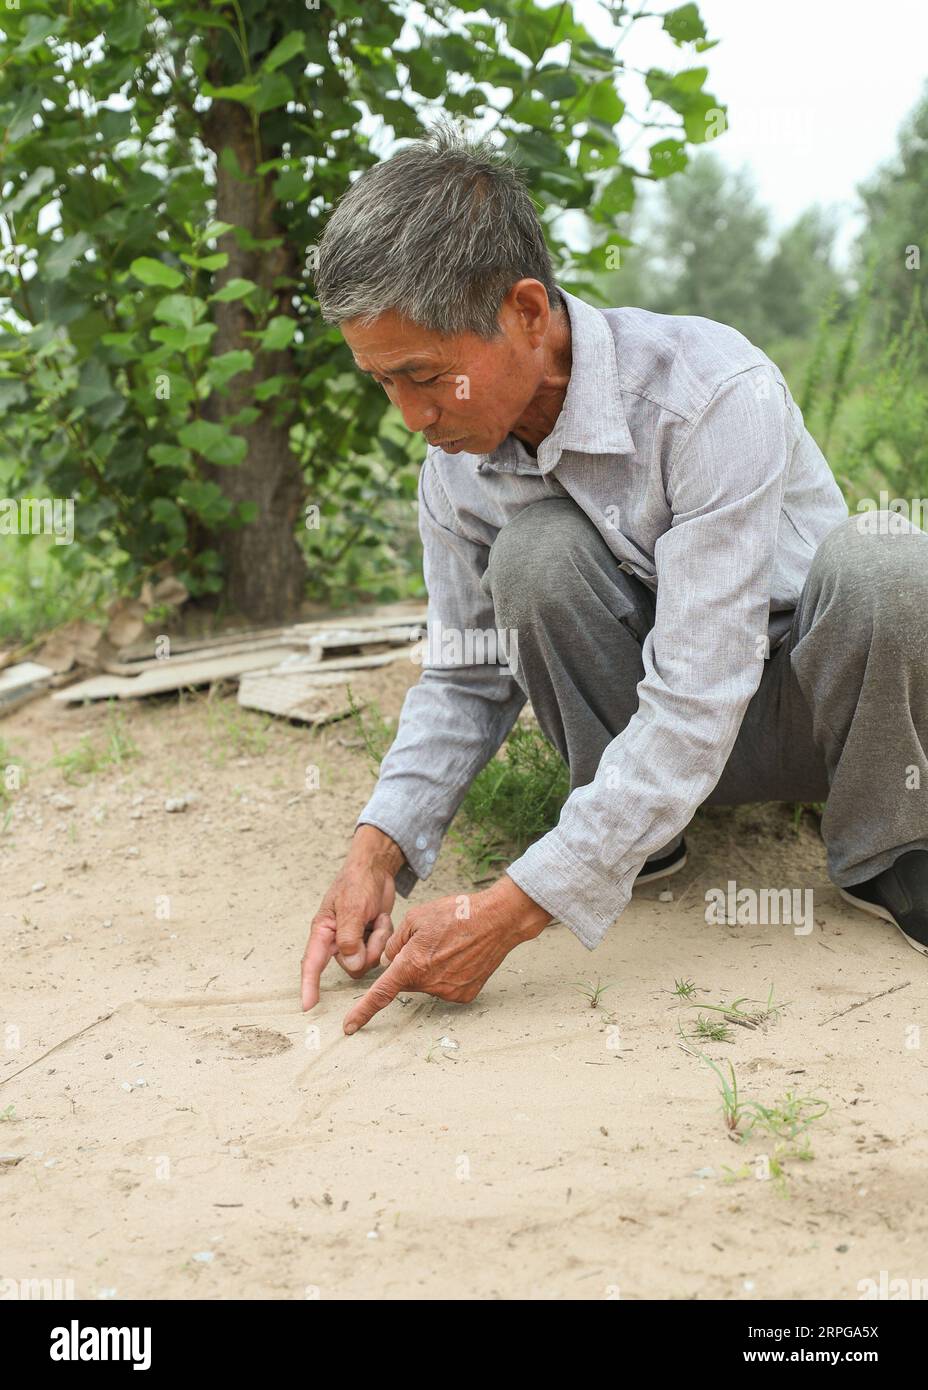 191009 -- FUXIN, 9 ottobre 2019 -- Hou Gui spiega il suo piano dell'area forestale nella contea di Zhangwu della città di Fuxin, provincia di Liaoning della Cina nord-orientale, 17 luglio 2019. Hou Gui, 68, è un villaggio del villaggio di Liujia, nella città di Sihecheng, nella contea di Zhangwu. Vivendo al confine meridionale della terra sabbiosa di Horqin, Hou ha piantato più di 200.000 alberi su 2.400 mu 160 ettari di terreno sabbioso negli ultimi 18 anni. Quando ero bambino, il vento fece saltare la sabbia e non riuscivo a vedere niente. Ha detto Hou Gui. Al fine di proteggere la sua patria, Hou Gui iniziò l'imboschimento nel 2001. Negli ultimi anni, con la stre Foto Stock